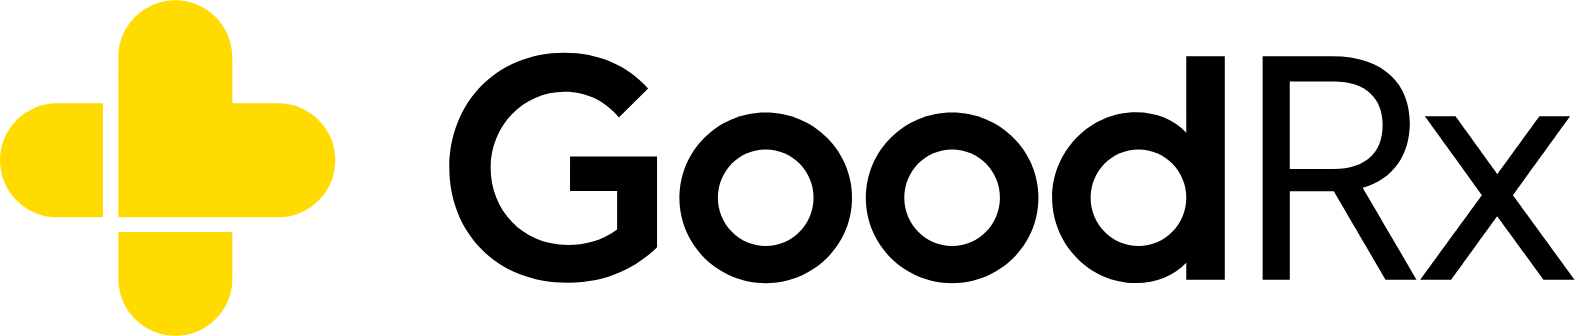 GoodRx logo large (transparent PNG)